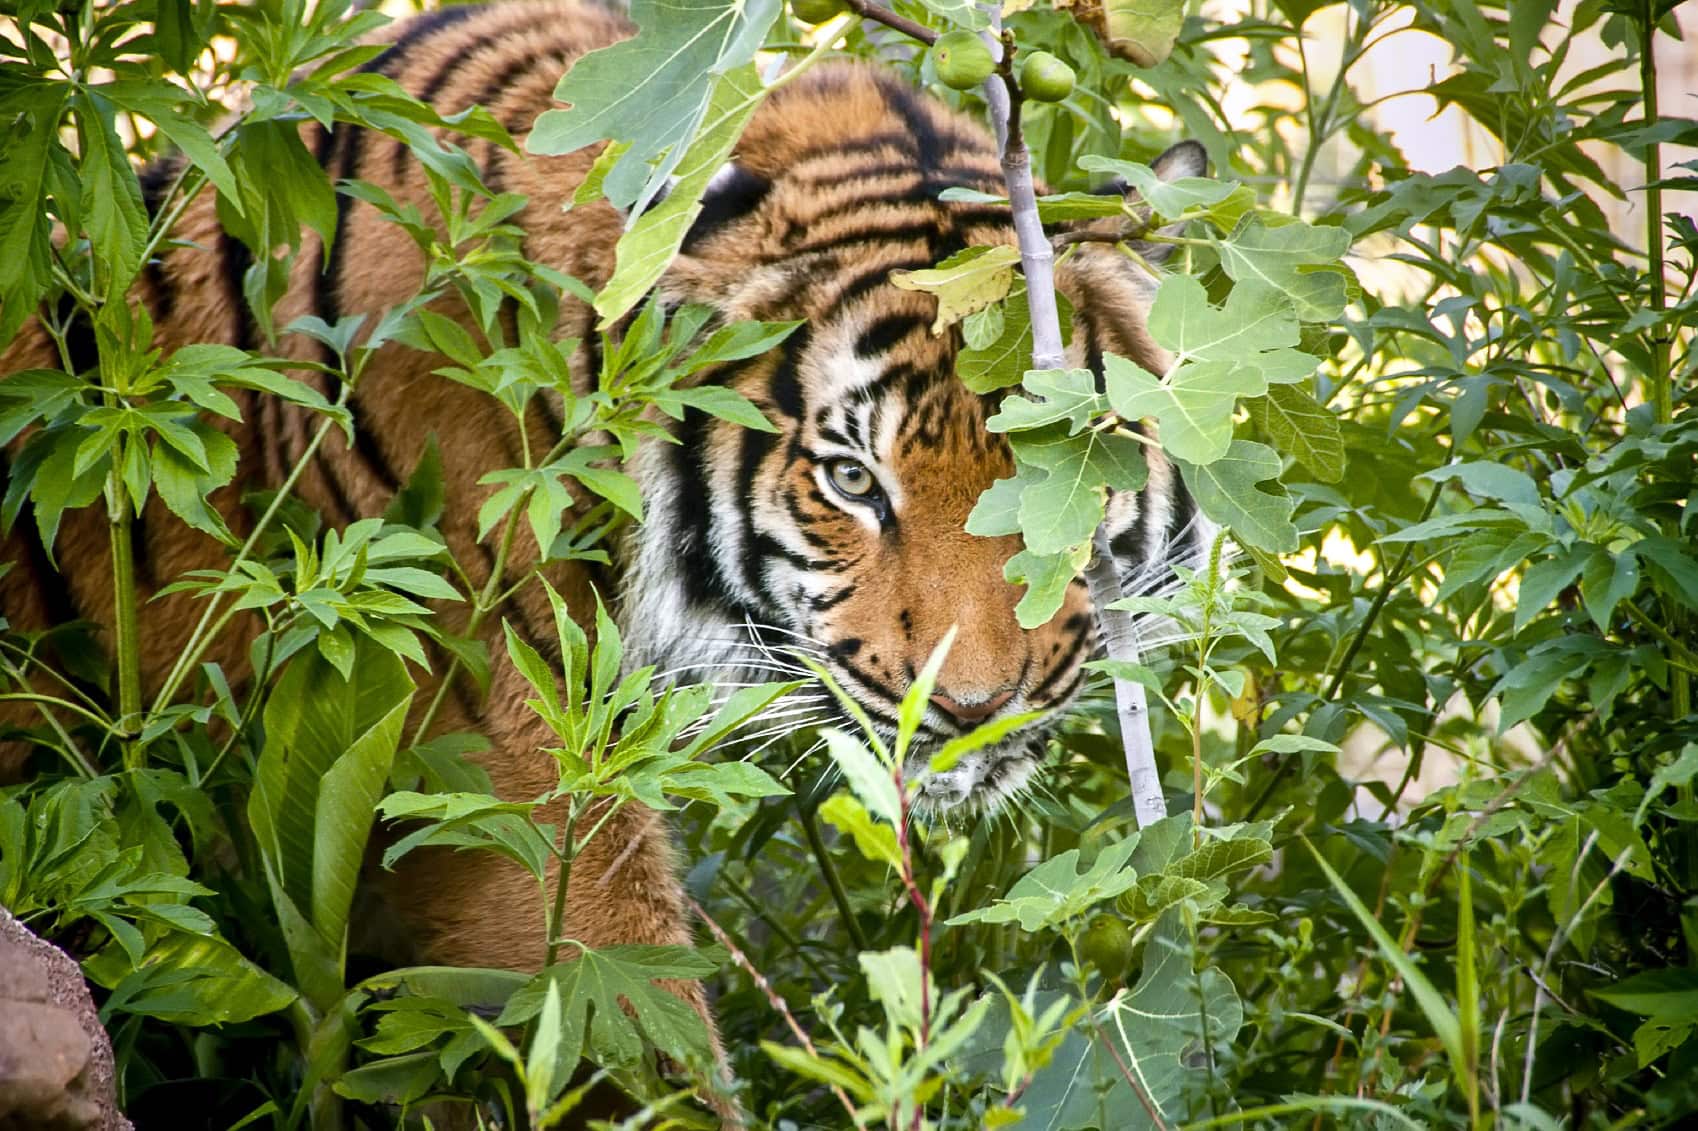 Bengal Tiger: Authentic Indian Cuisine